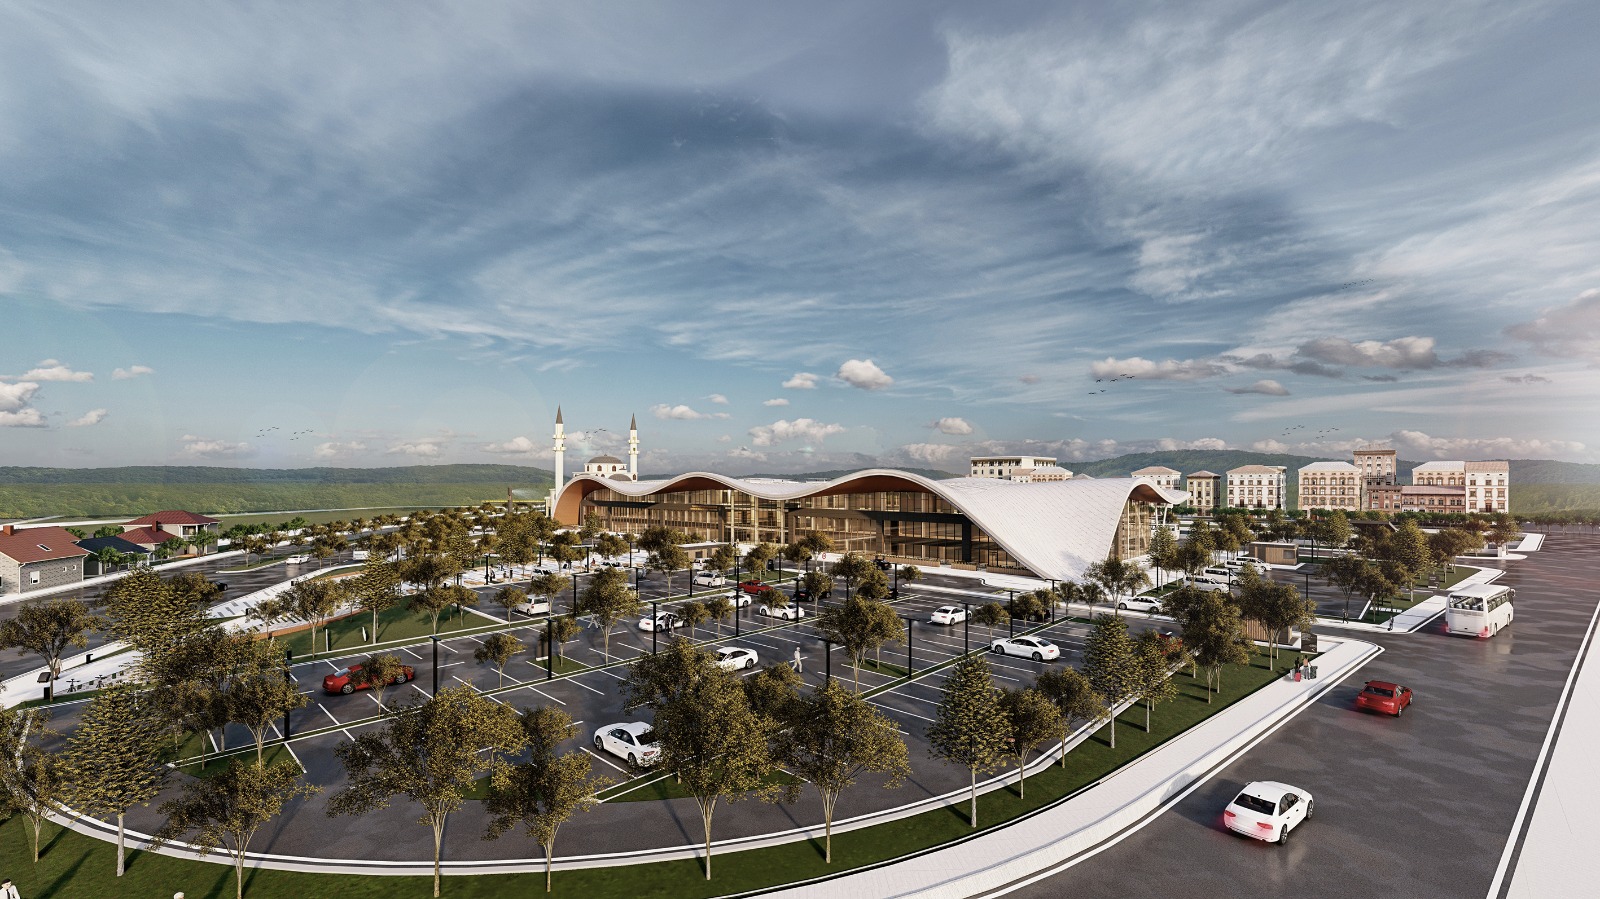 Trabzon Büyükşehir Belediyesi 2023'ü "Açılış Senesi" ilan etti